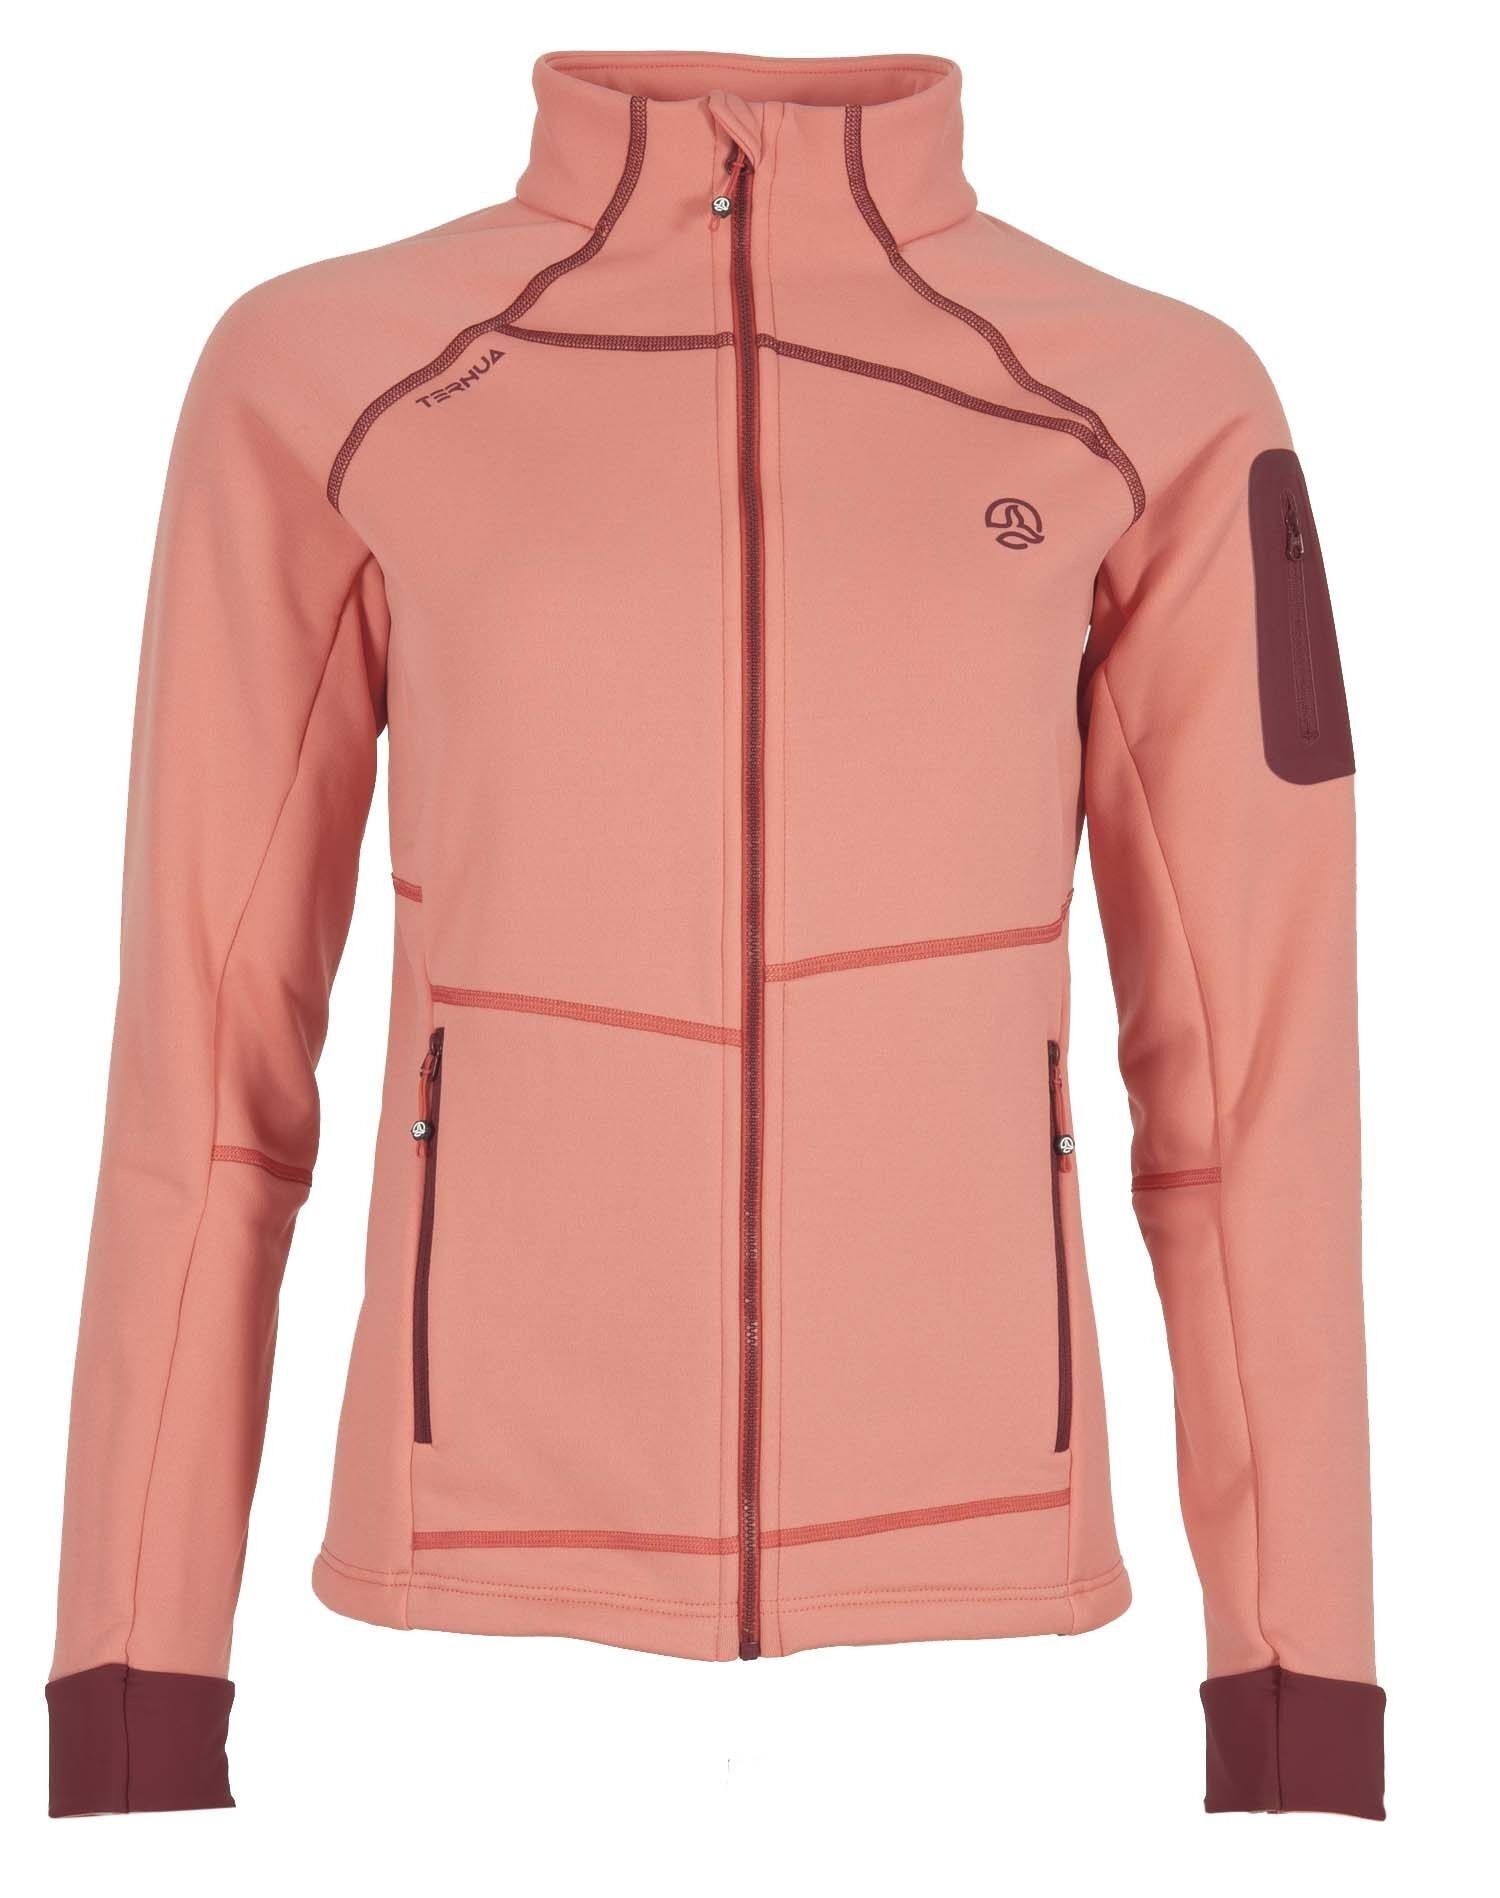 Ternua Rania Jacket - Fleece jacket - Women's